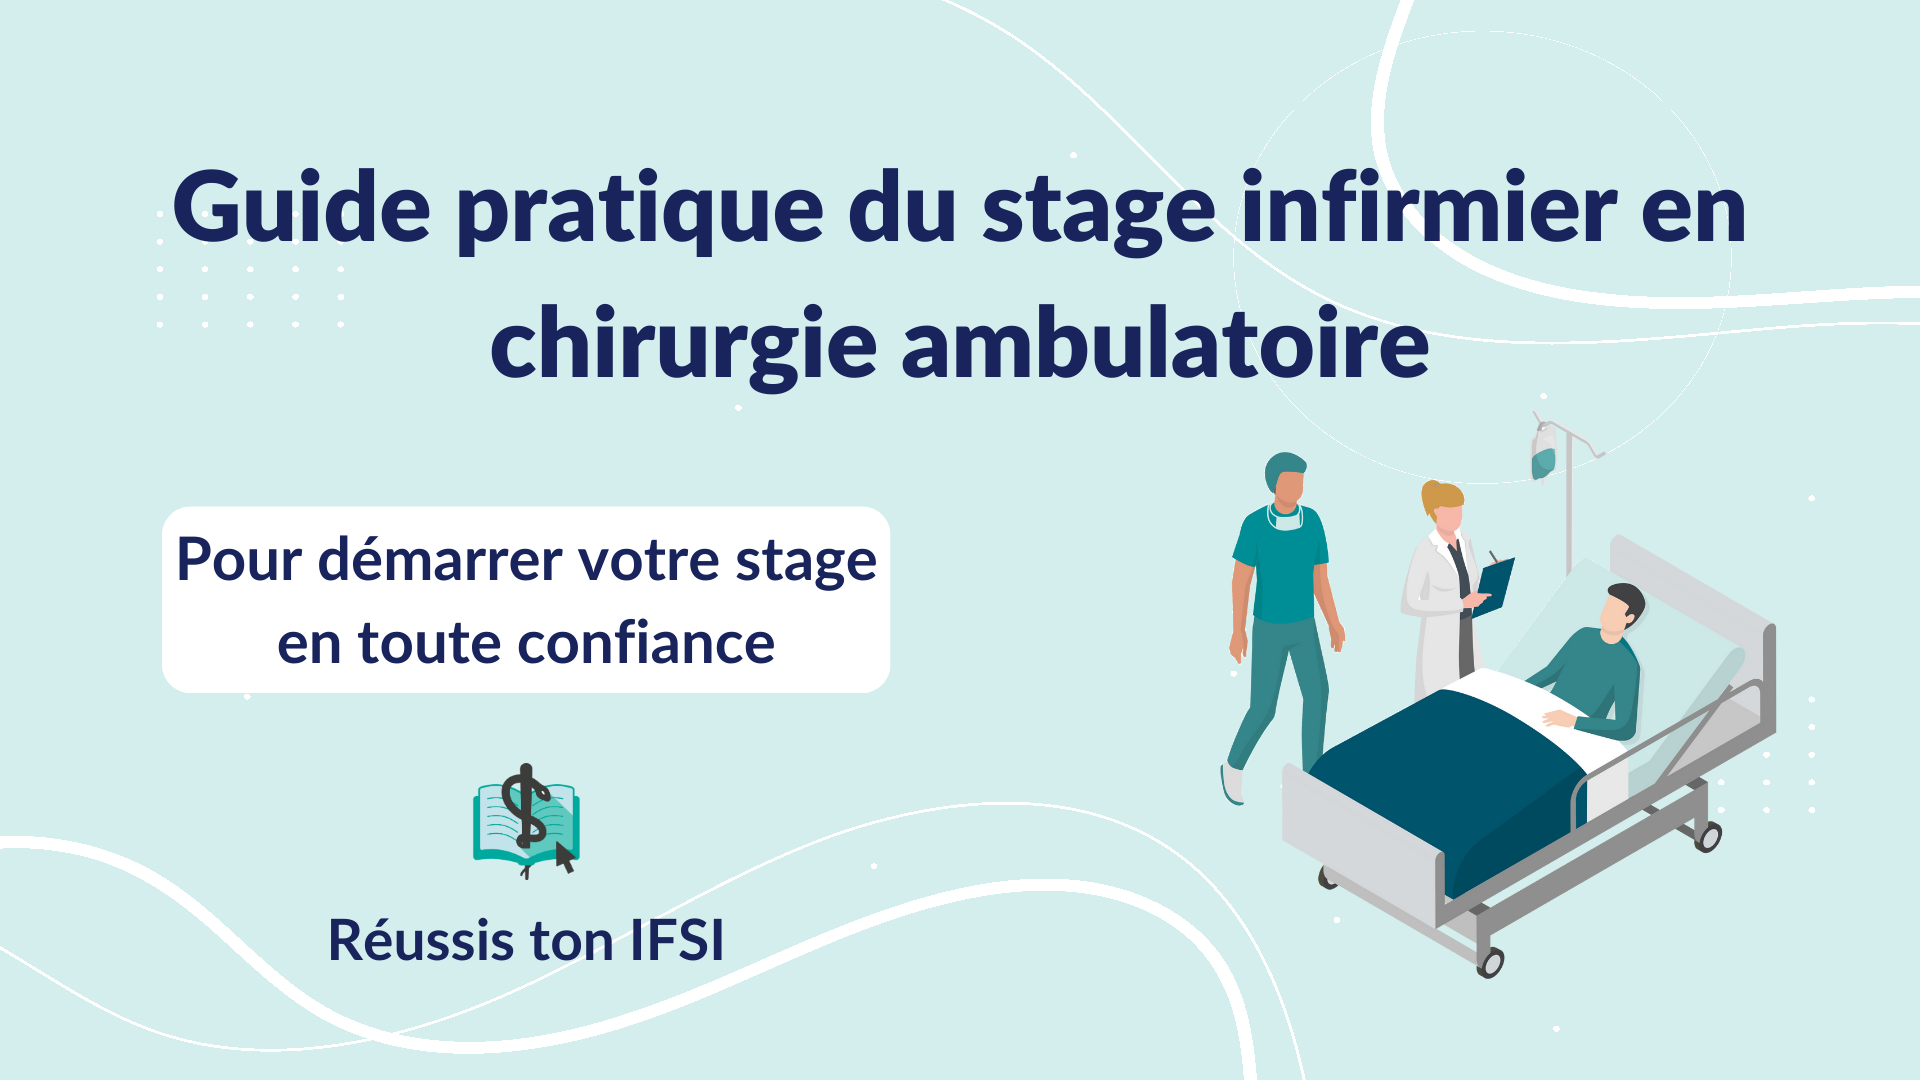 Vignette d'article - Guide du stage infirmier en chirurgie ambulatoire